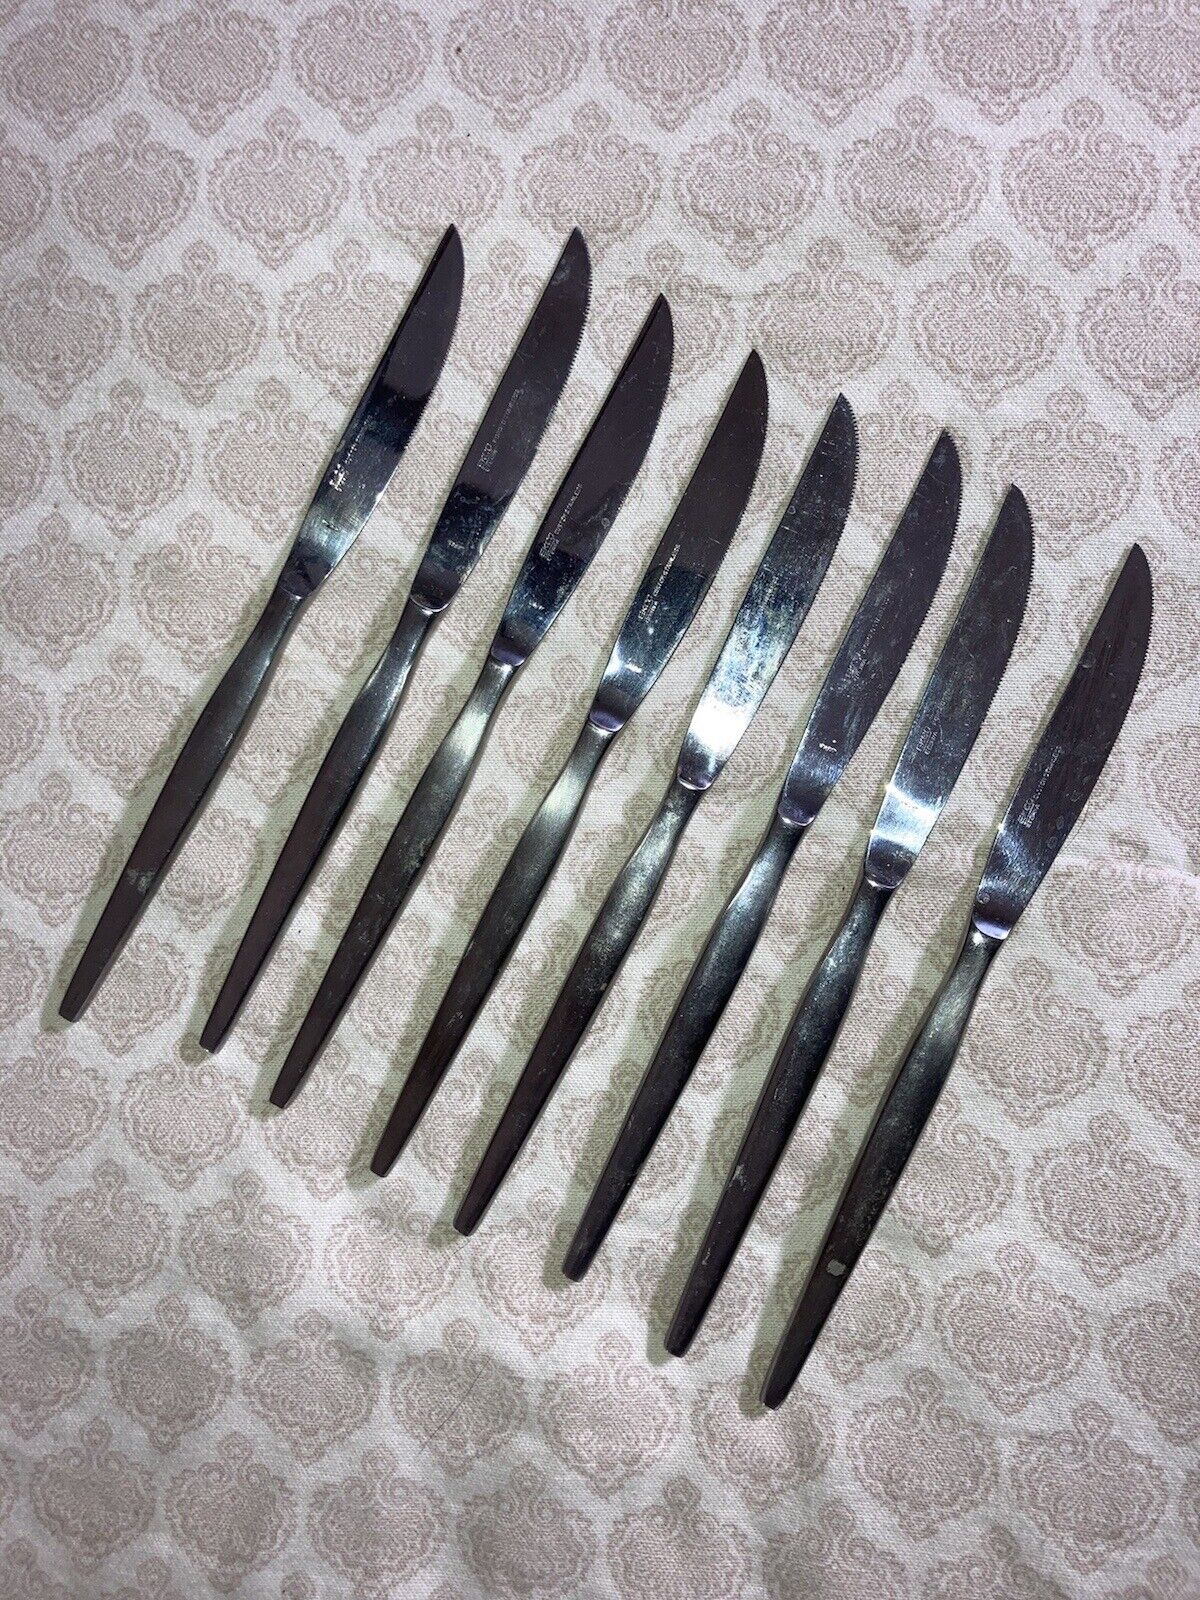 (8) MCM Ekco Eterna Japan Stainless Steel Knife Cutlery